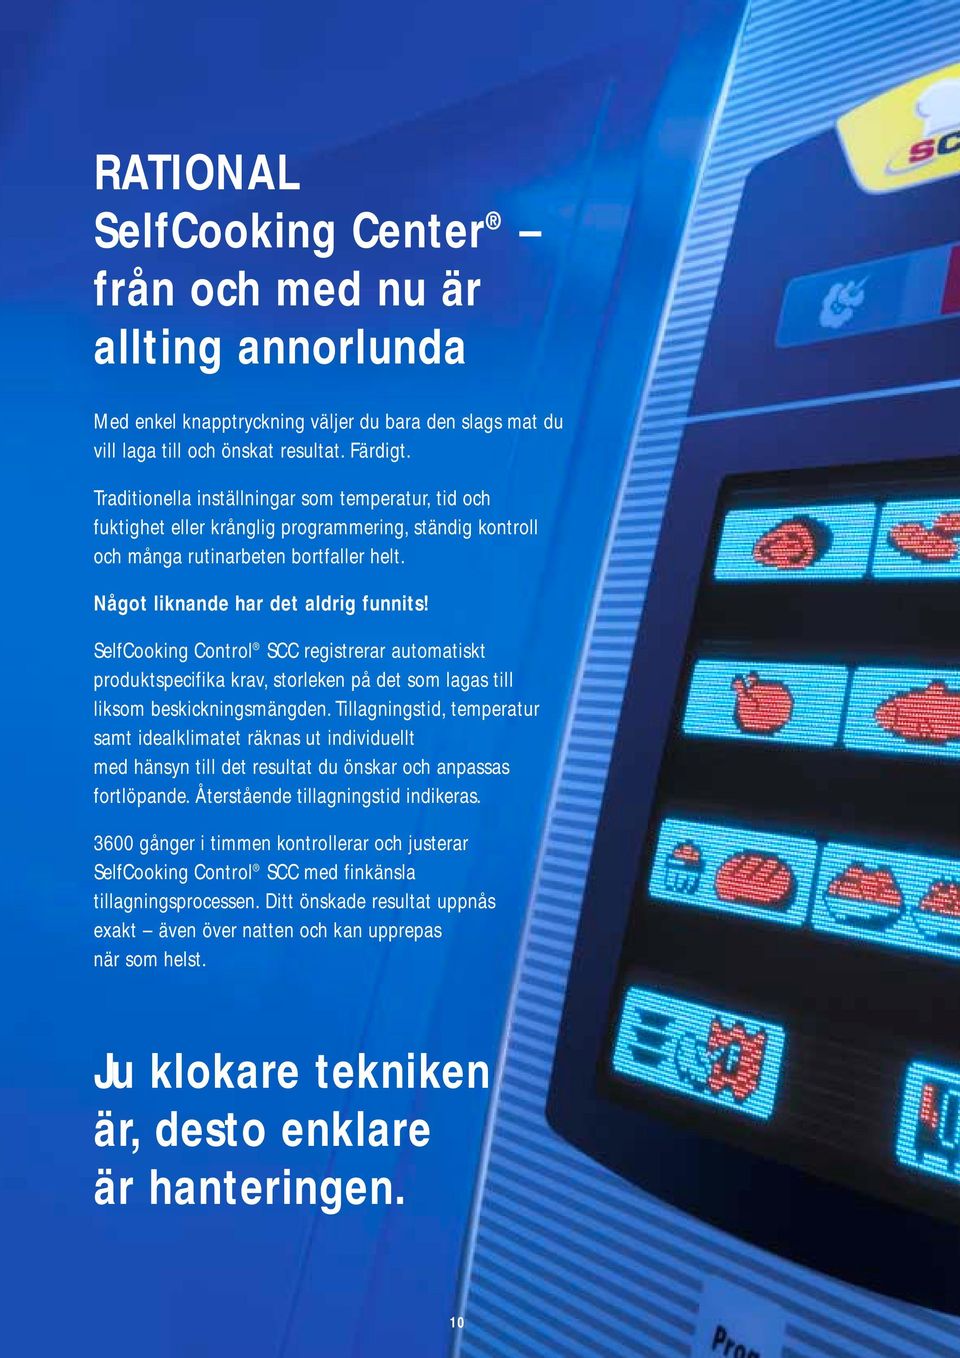 SelfCooking Control SCC registrerar automatiskt produktspecifika krav, storleken på det som lagas till liksom beskickningsmängden.